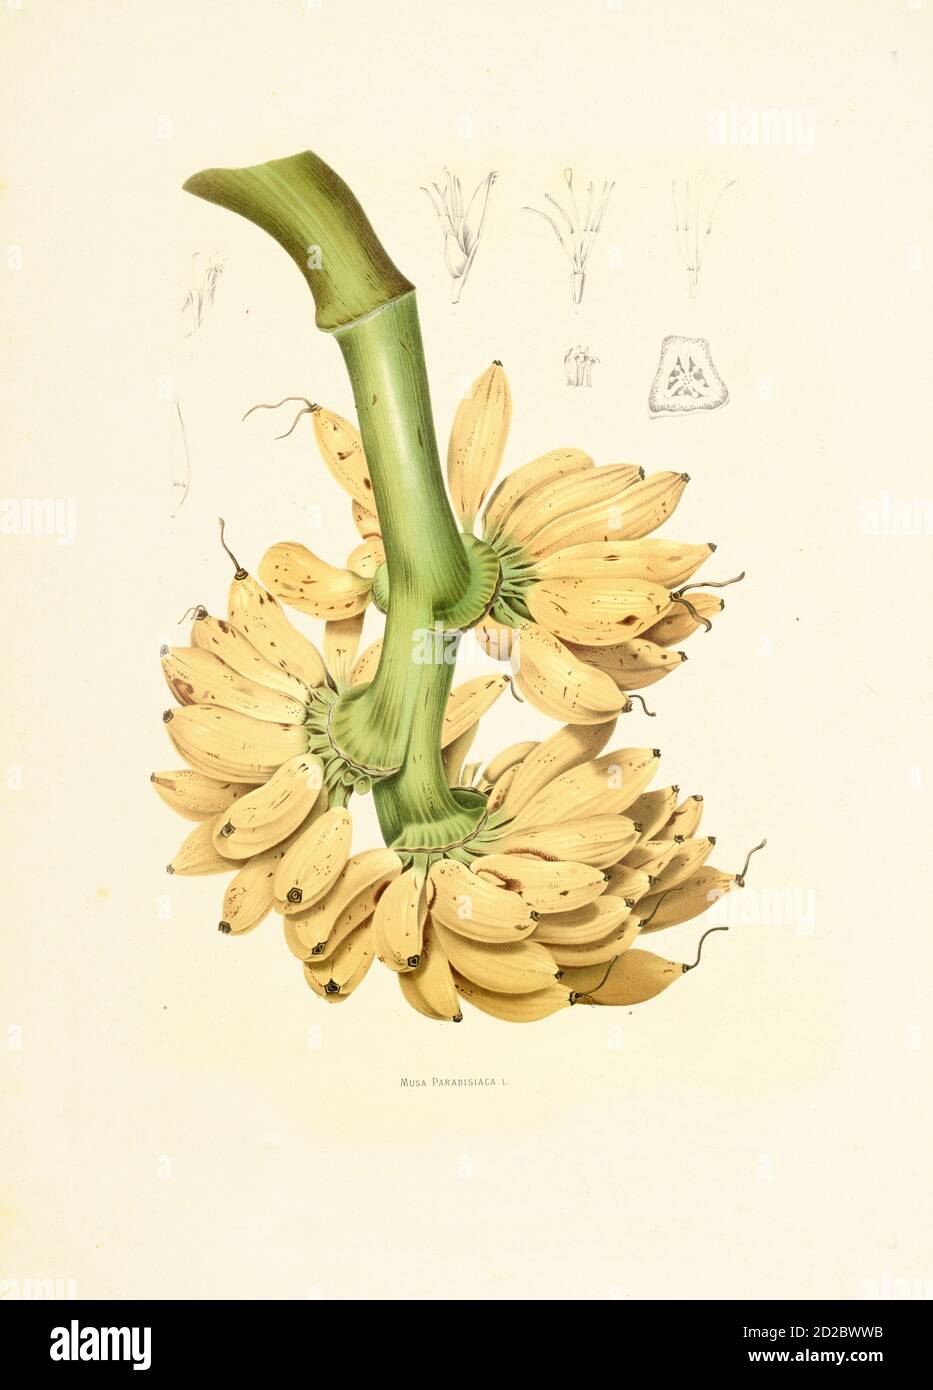 Gravure antique de musa paradisiaca (également connue sous le nom de plantain français ou simplement plantain). Illustration par Berthe Hoola van Nooten du livre fleurs Banque D'Images